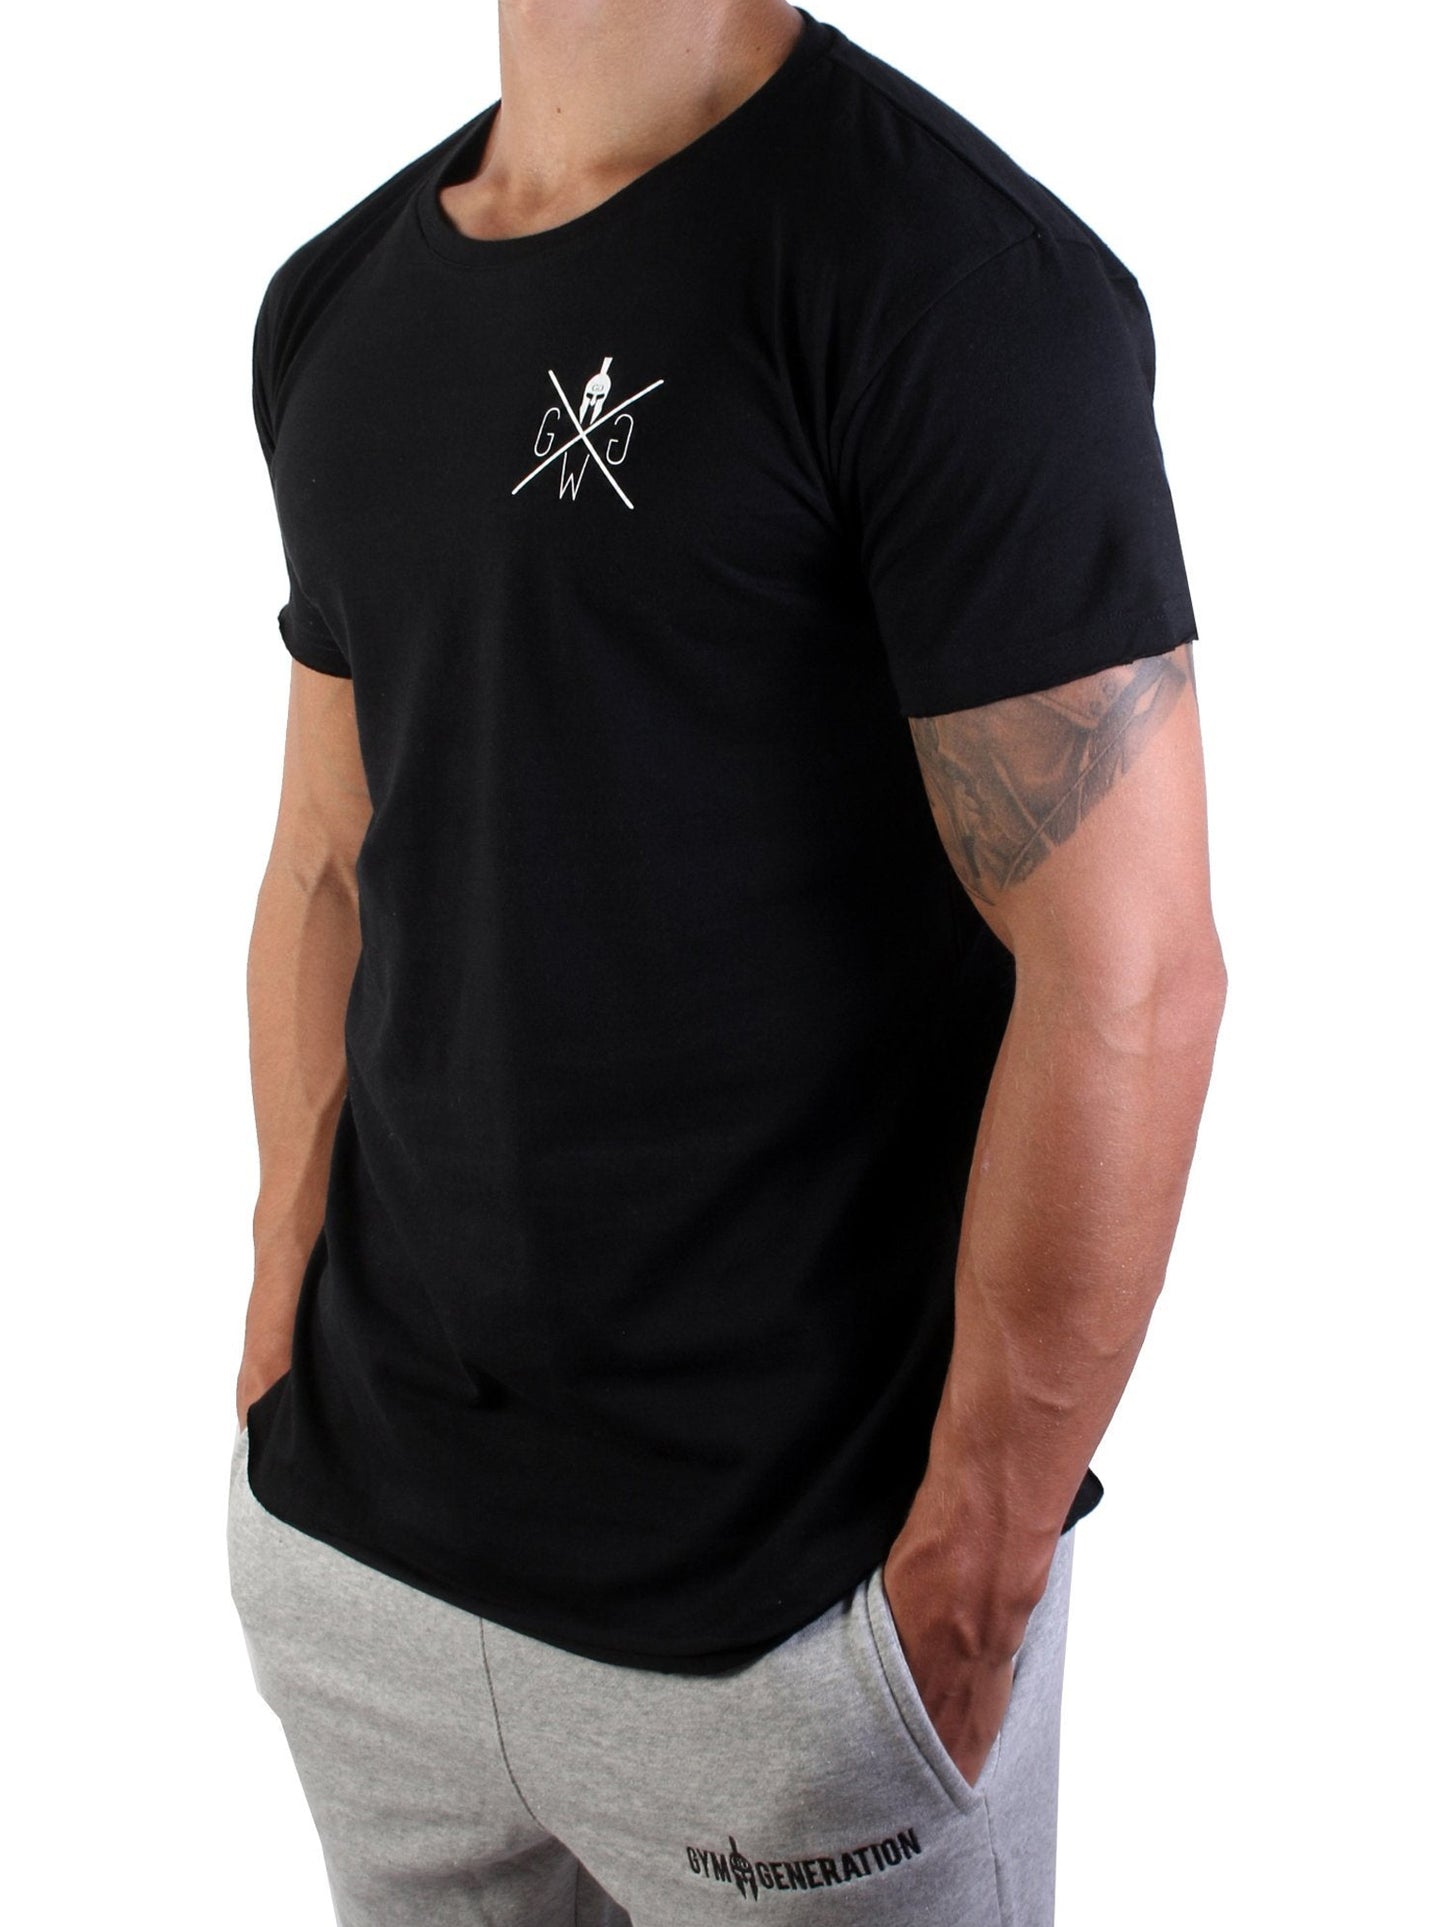 Vielseitiges schwarzes Gym T-Shirt von Gym Generation, kombiniert Stil und Komfort für jede Gelegenheit.